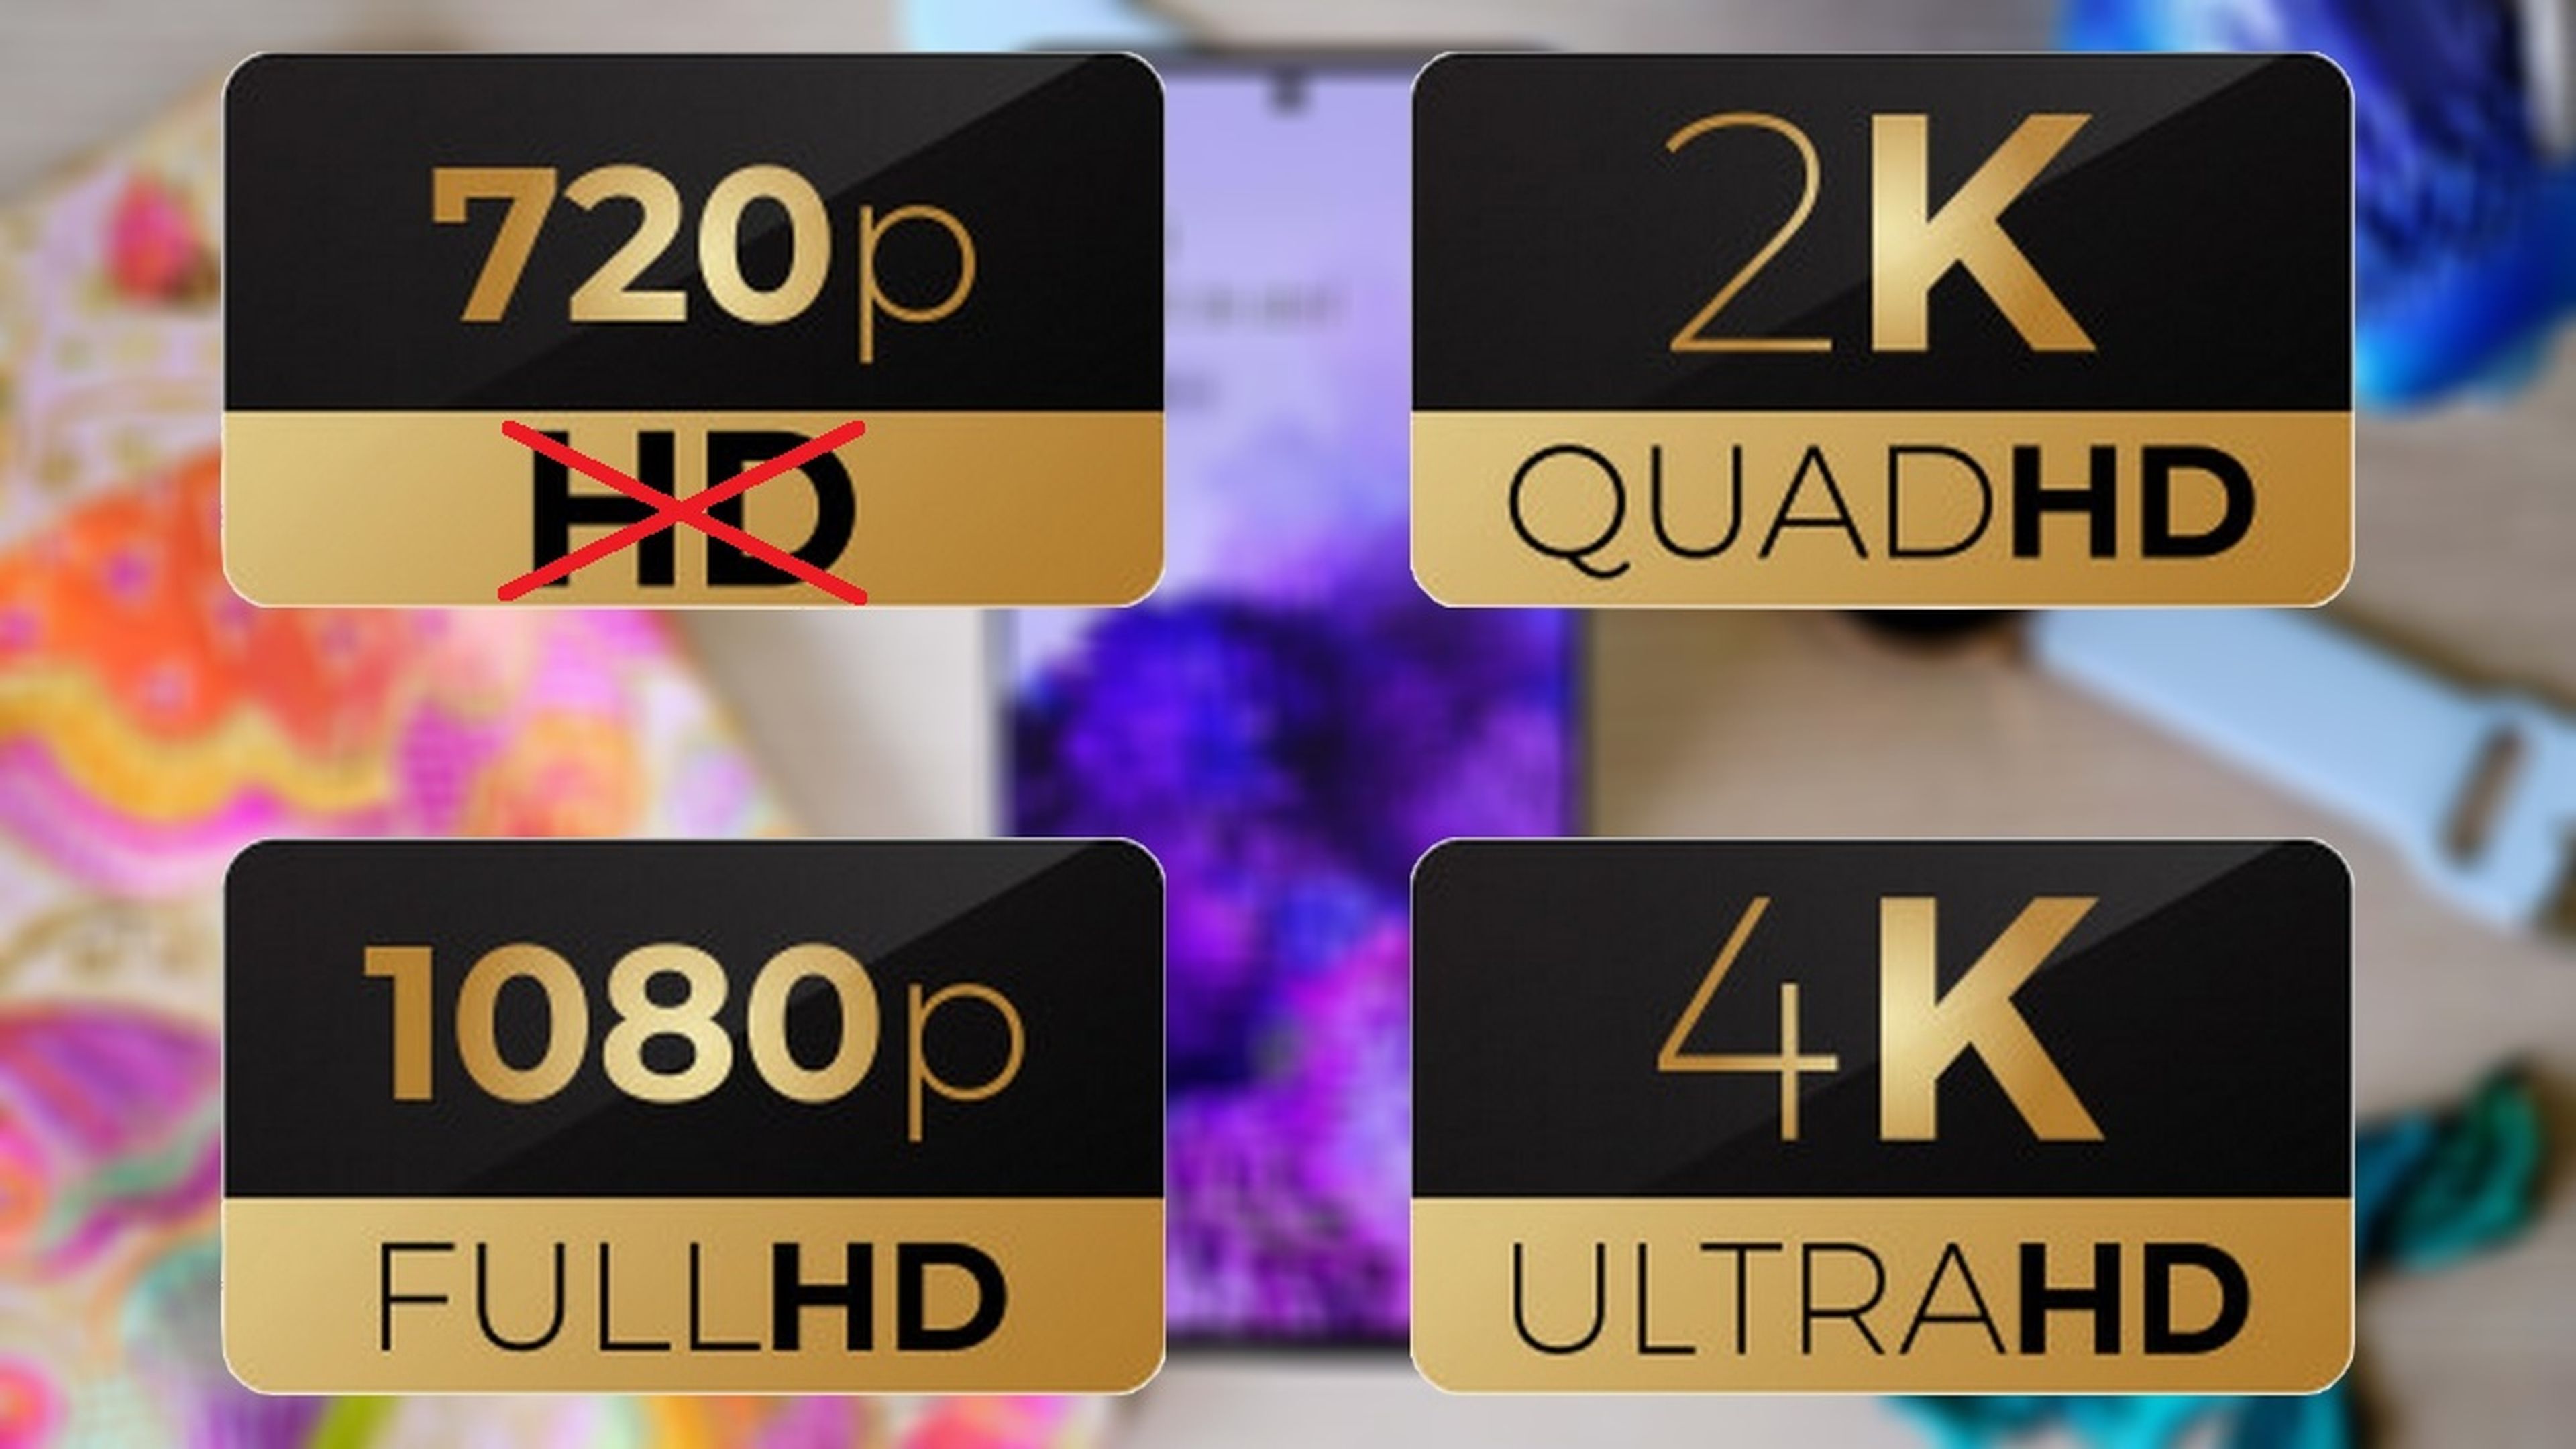 Los vídeos a 720p ya no son HD, según YouTube